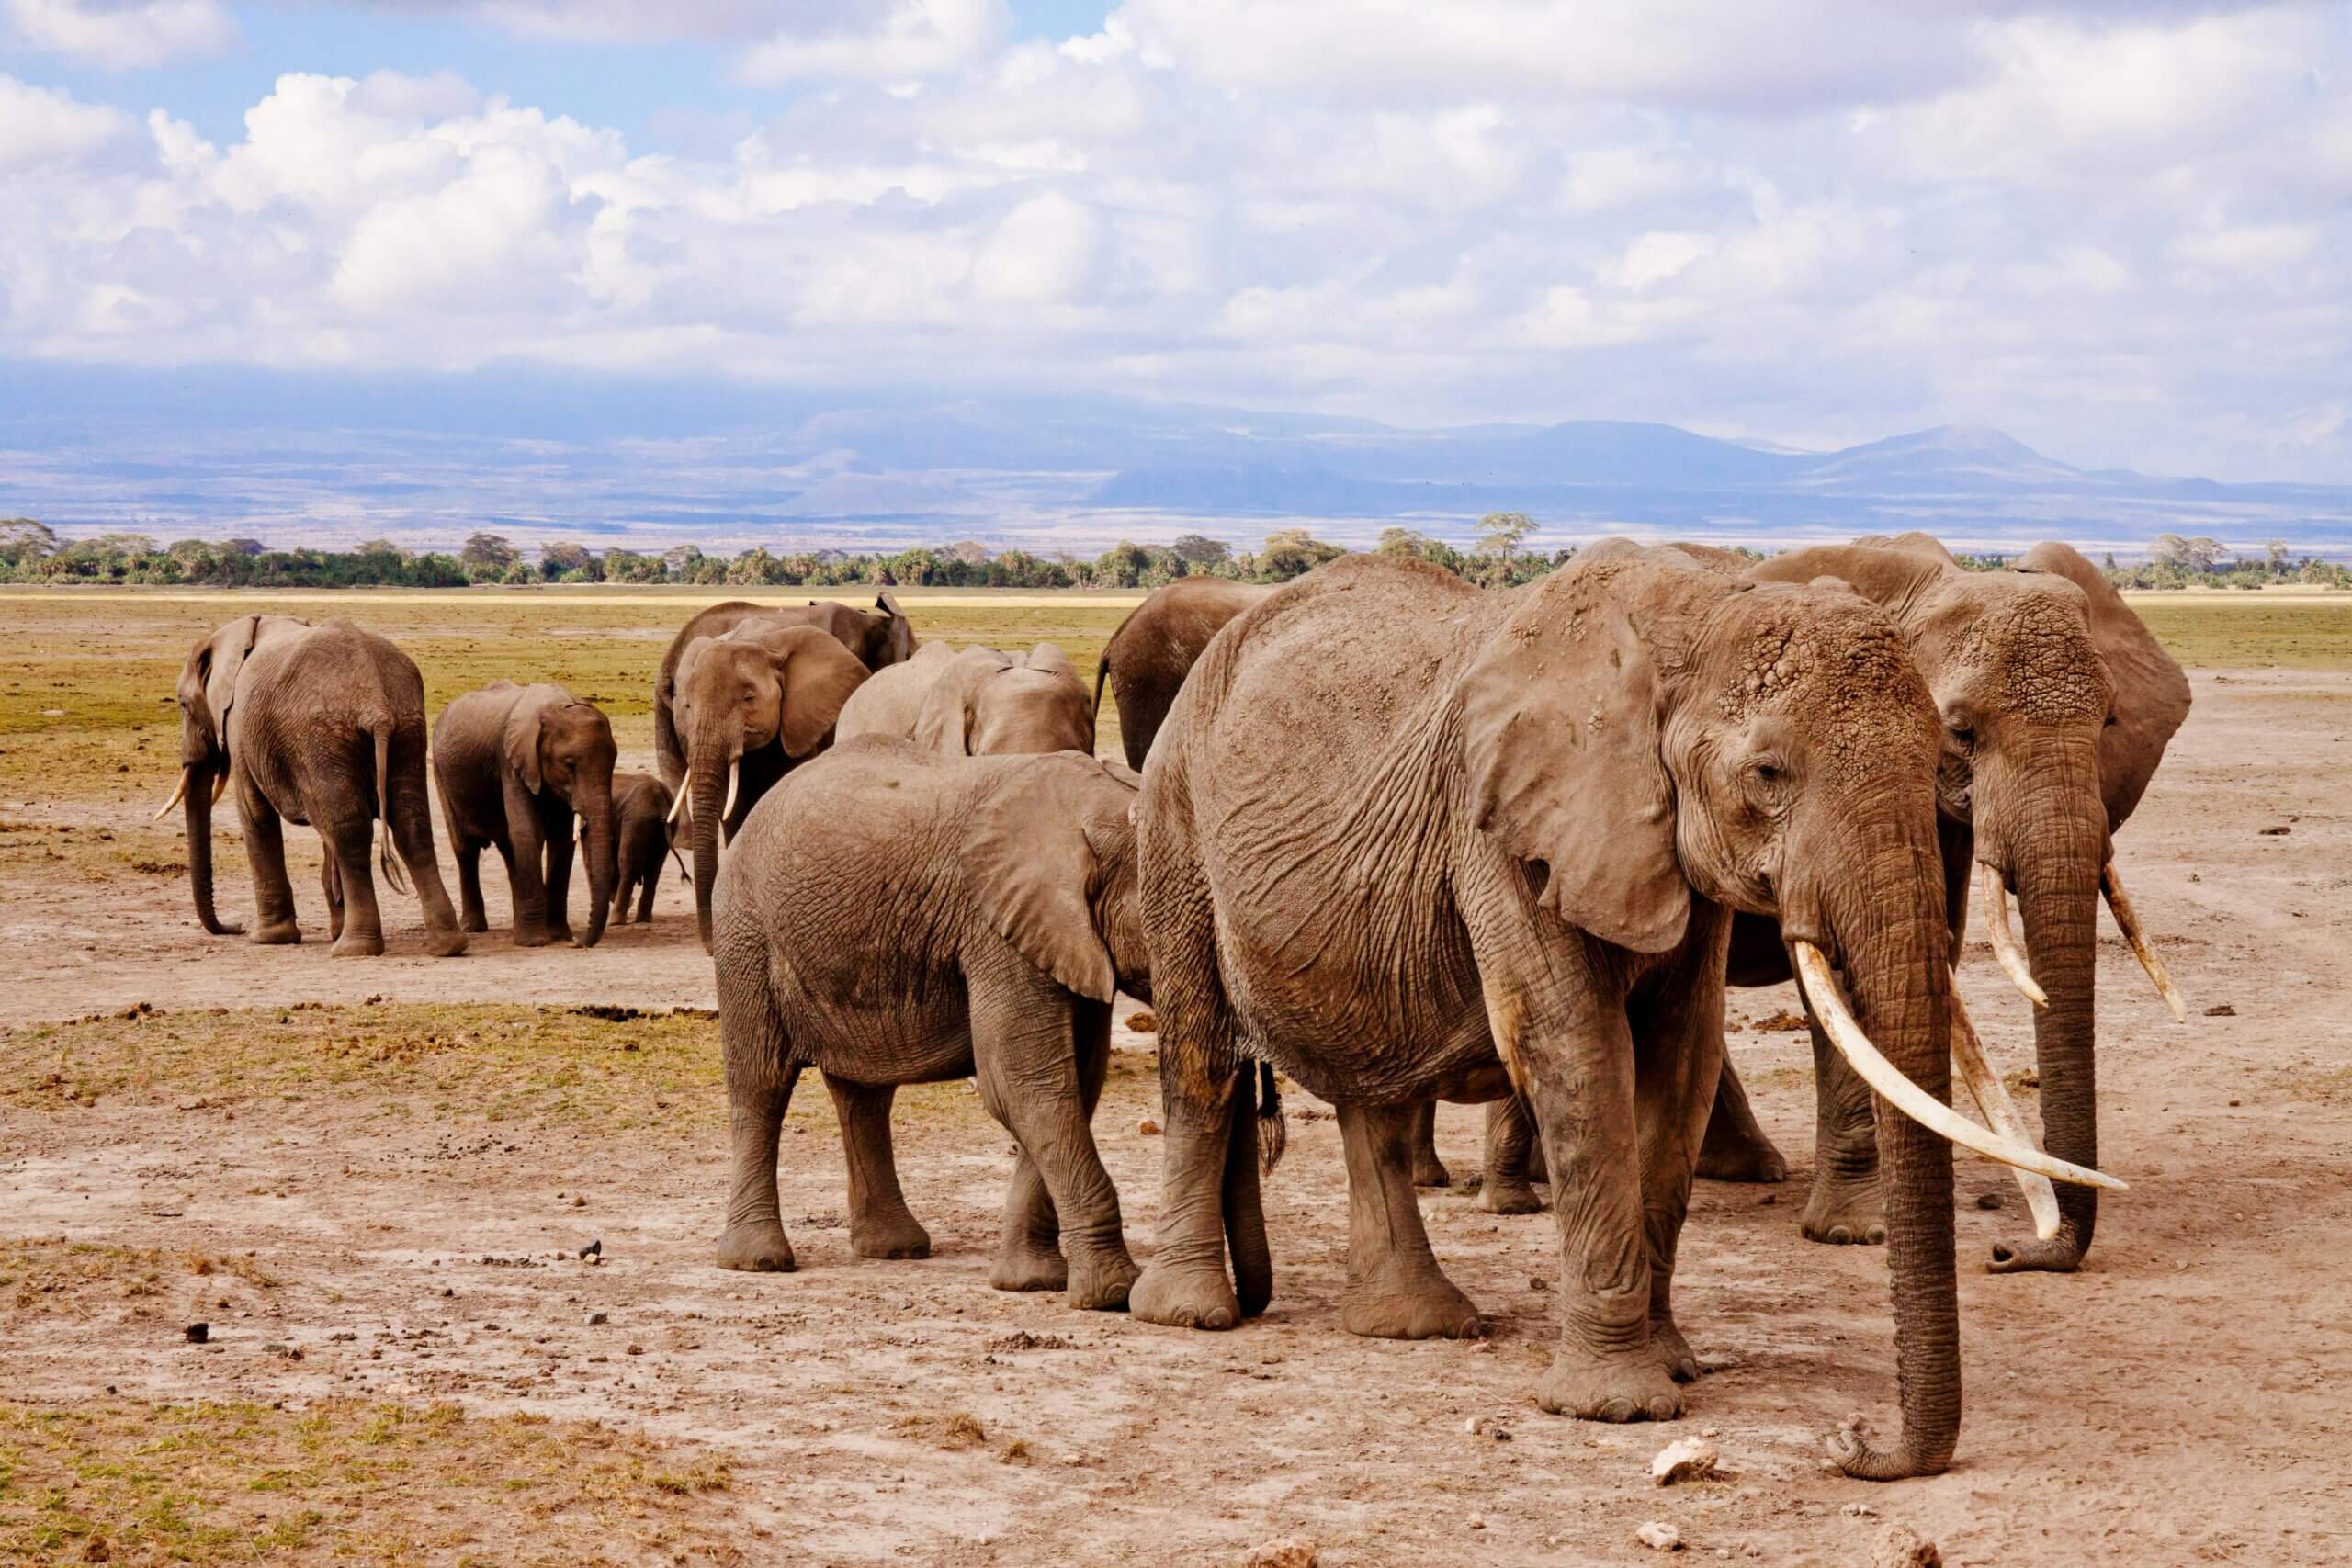 Help de laatste super tuskers van Amboseli en teken de petitie